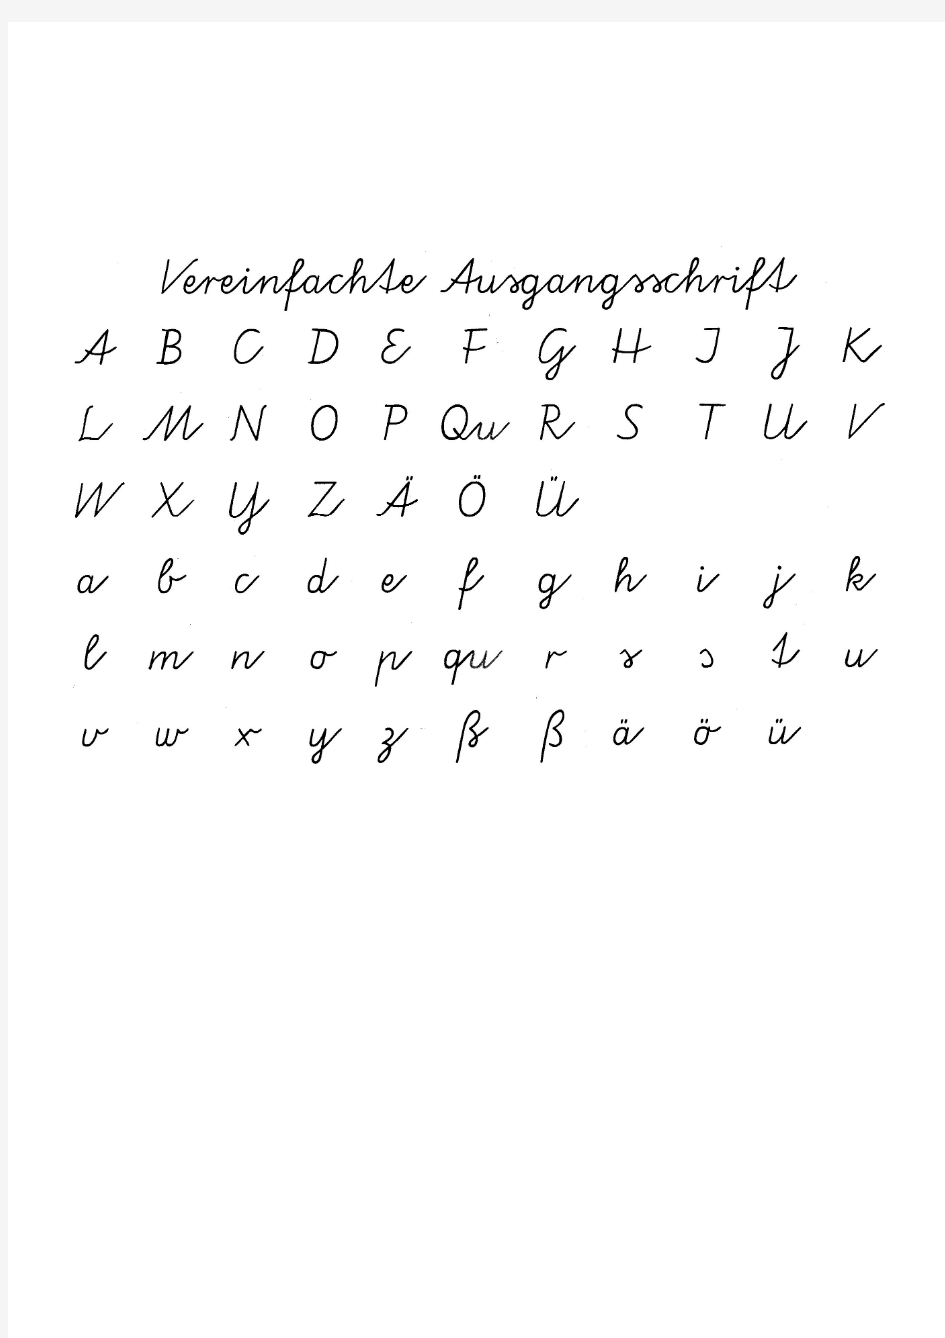 德语字母表 德语手写体写法